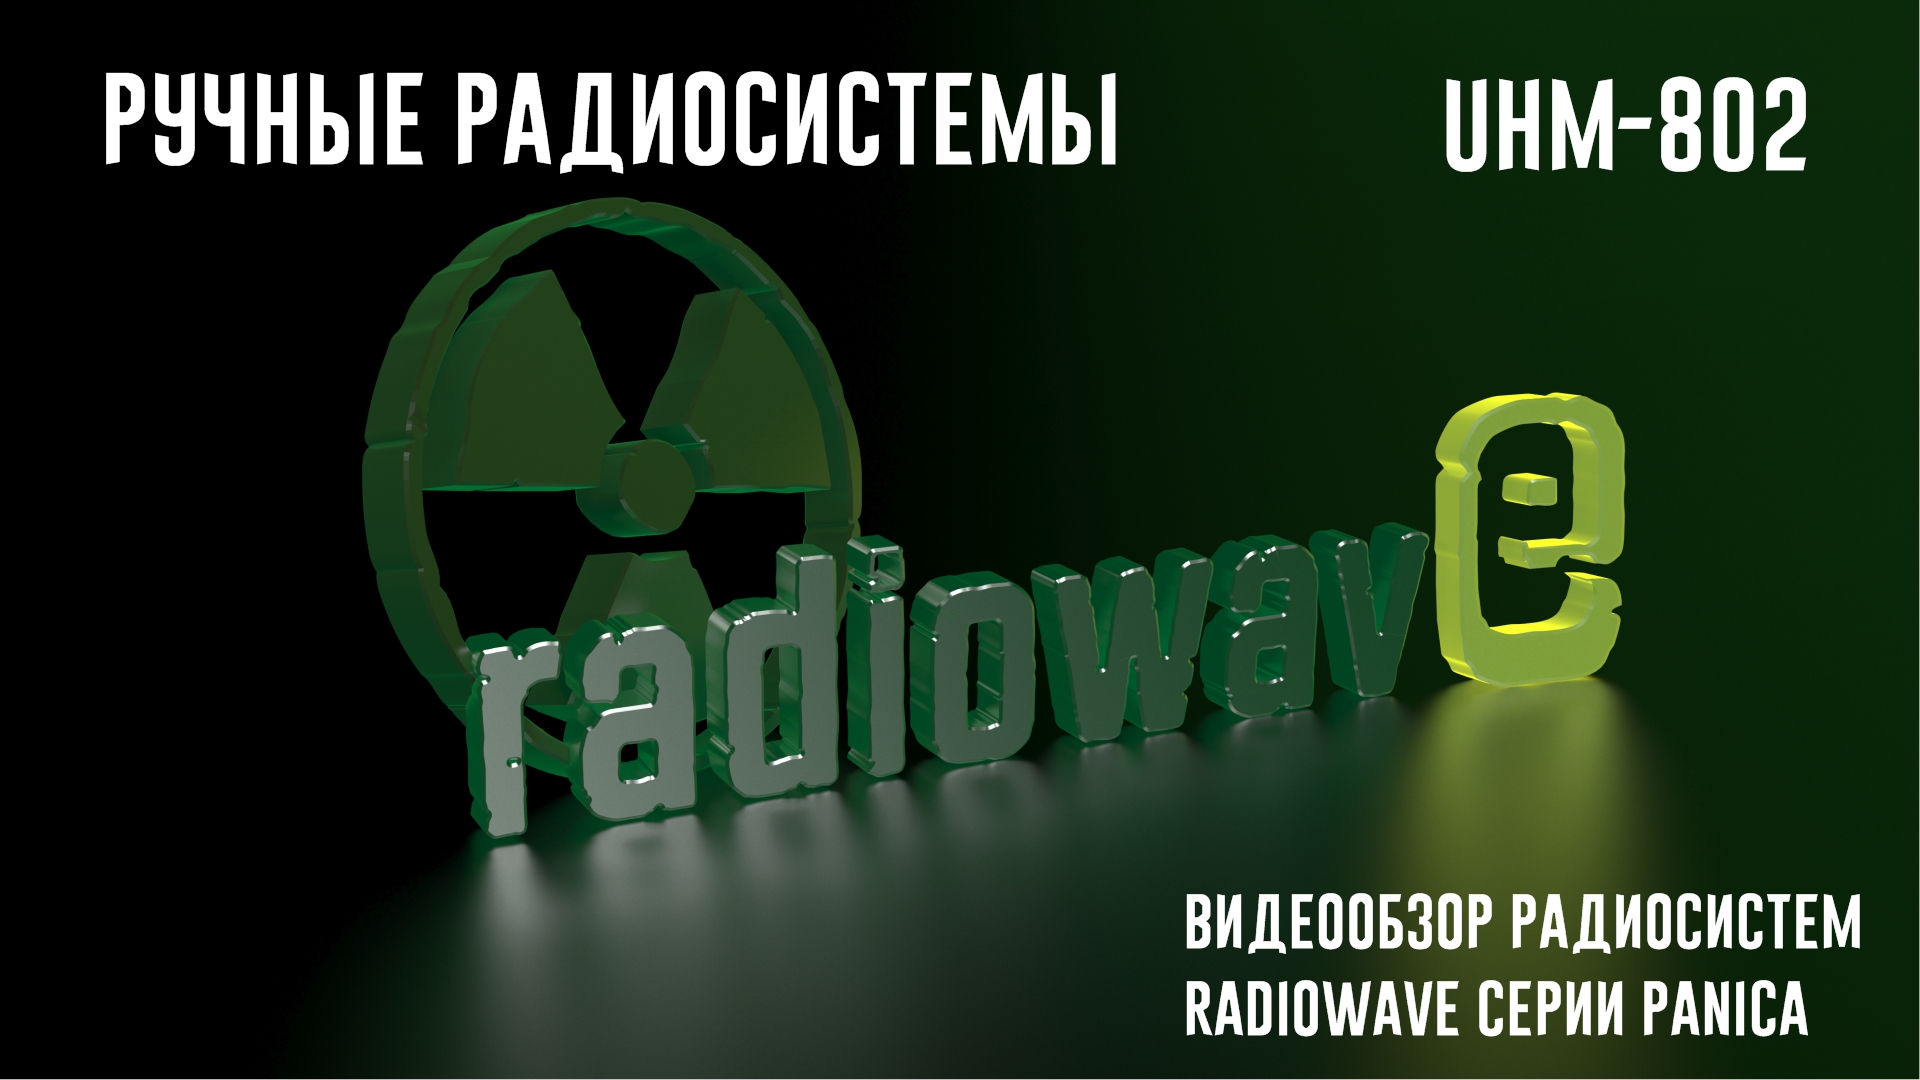 Radiowave UHM-802 Ручные Радиосистемы